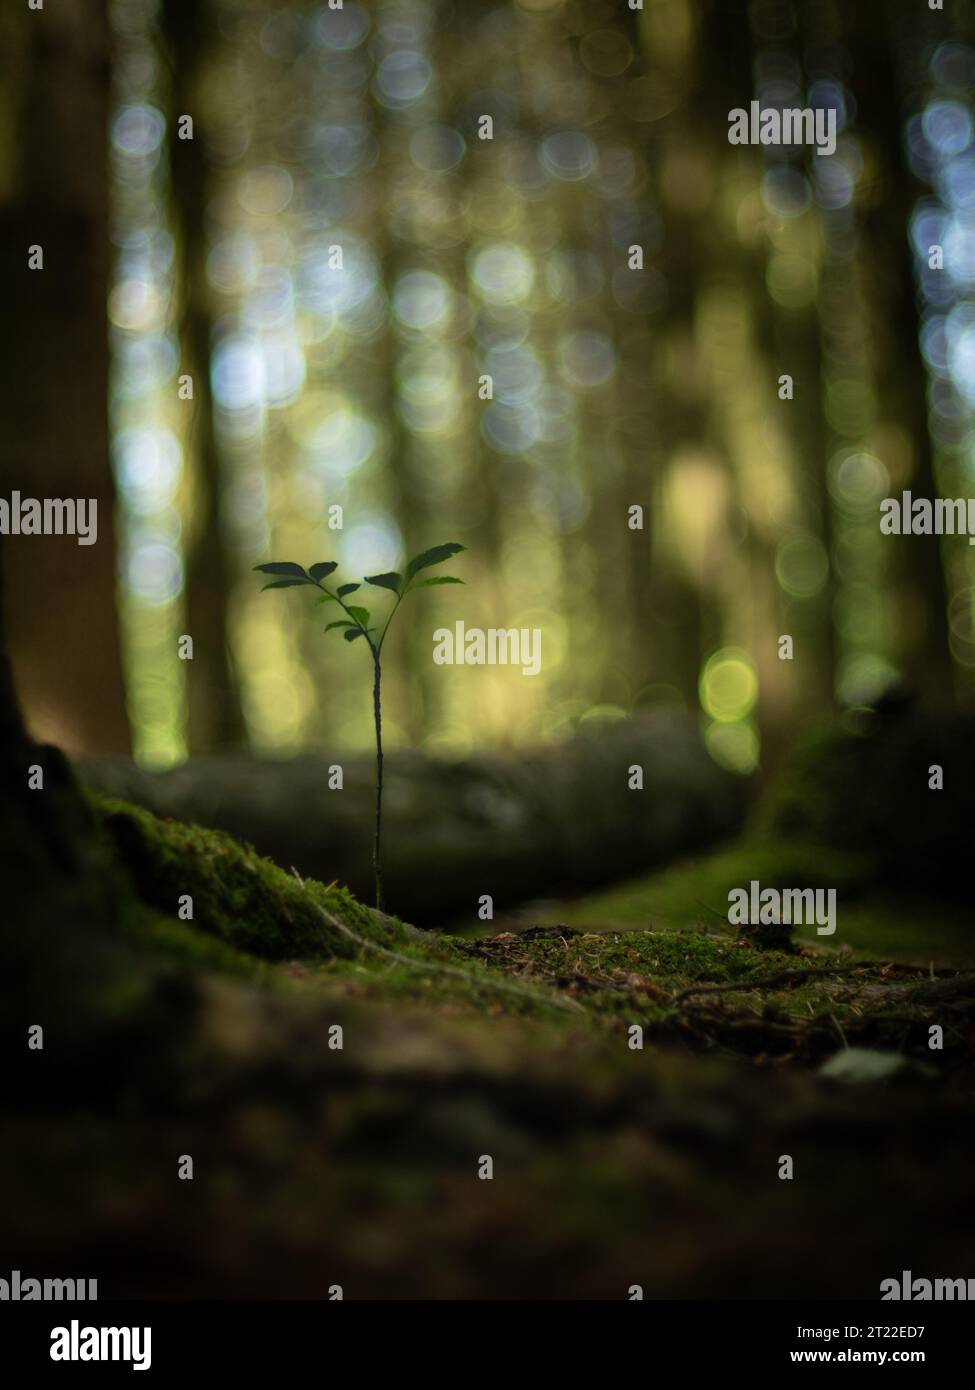 Ein kleines Bäumchen, zwischen großen Bäumen in einer moosbedeckten Waldlichtung, die für den wunderschönen Bokeh-Effekt sorgt. Stock Photo